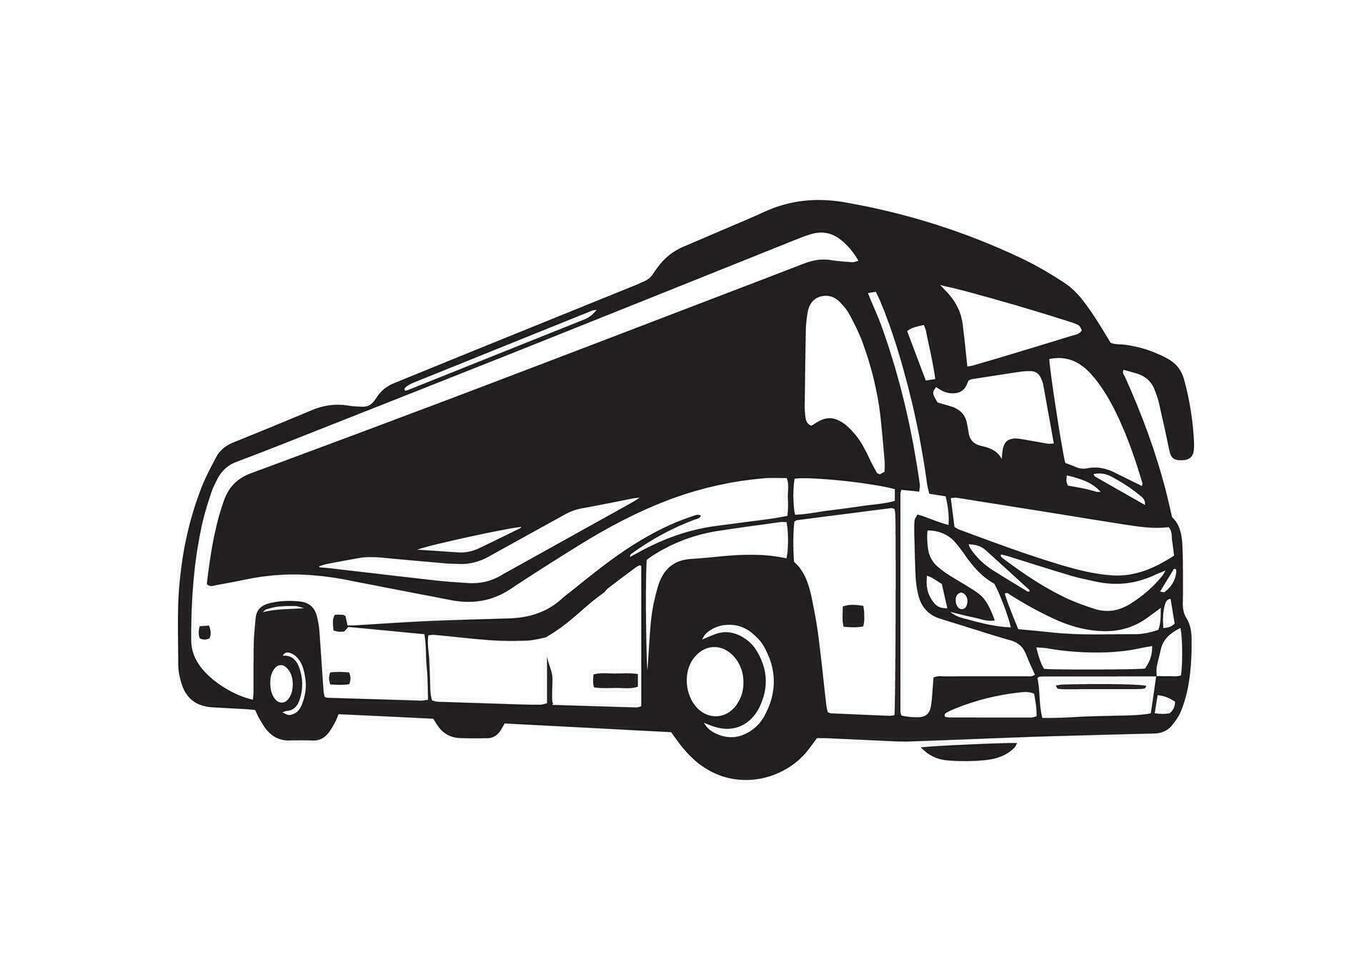 minimal et abstrait logo de autobus icône école autobus vecteur silhouette isolé conception